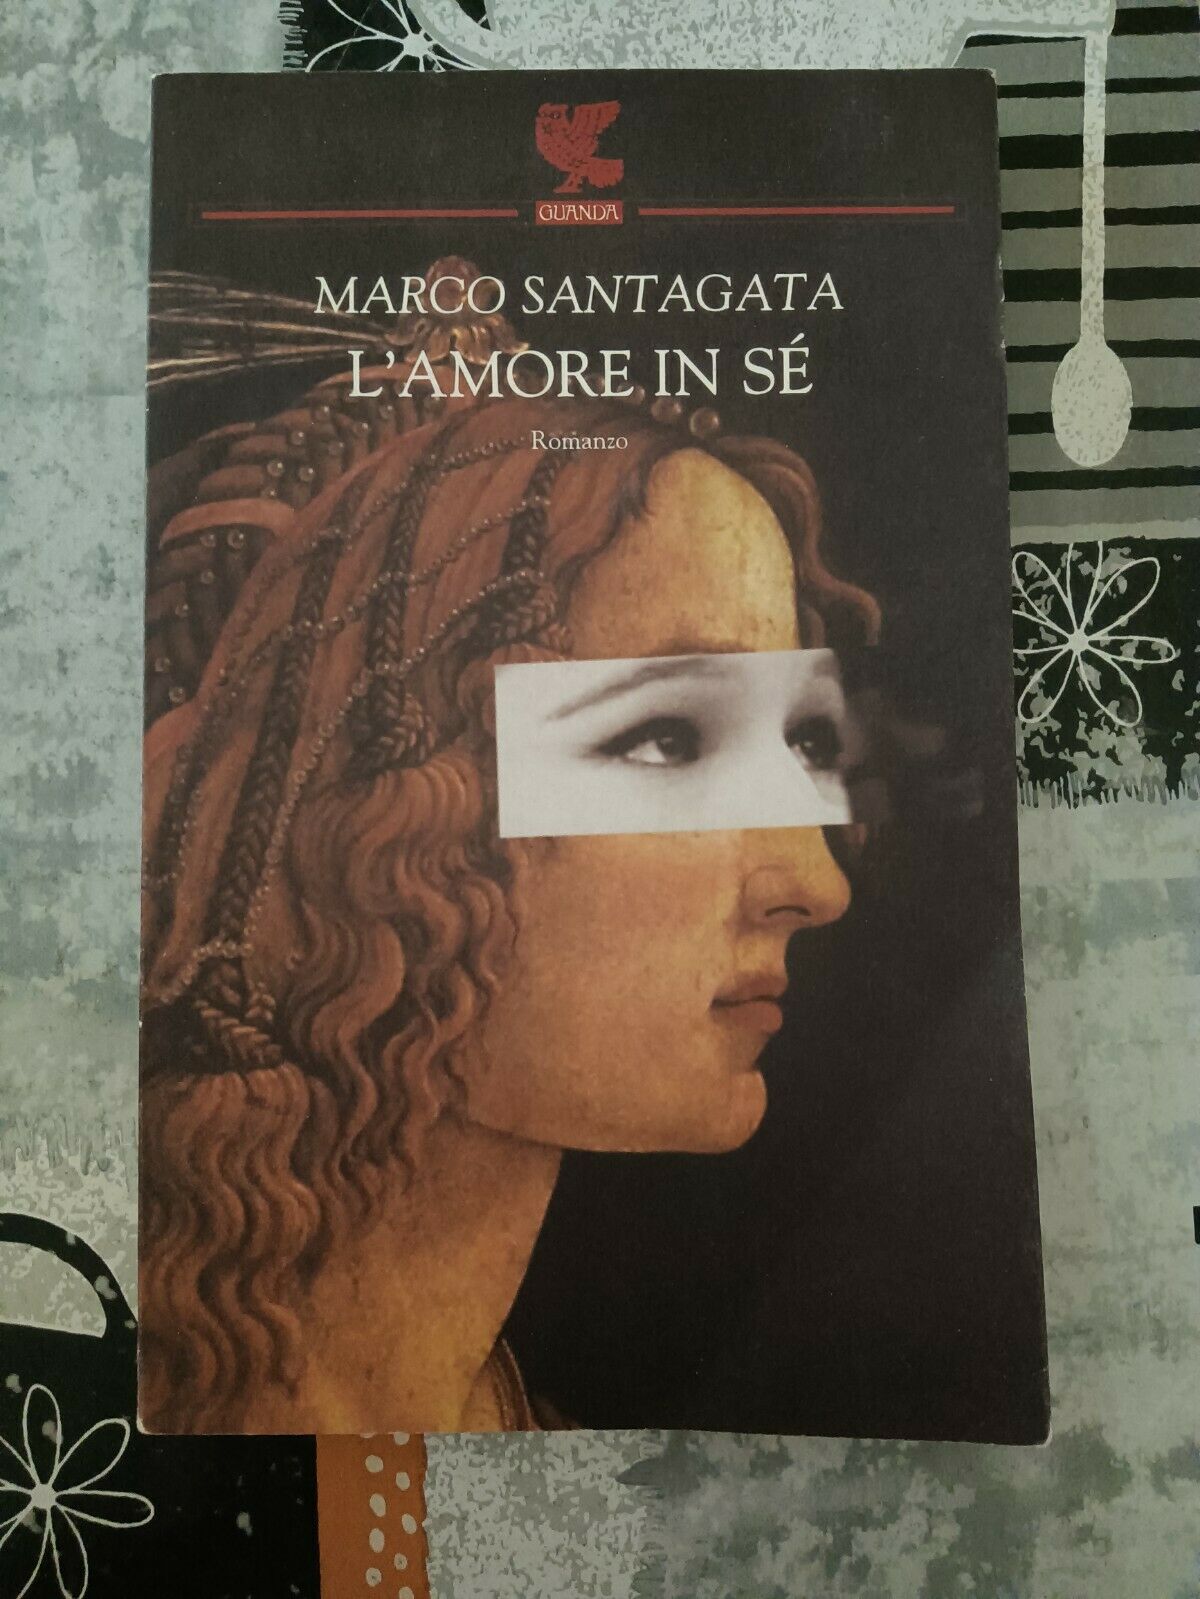 L’amore in se | Marco Santagata - Guanda